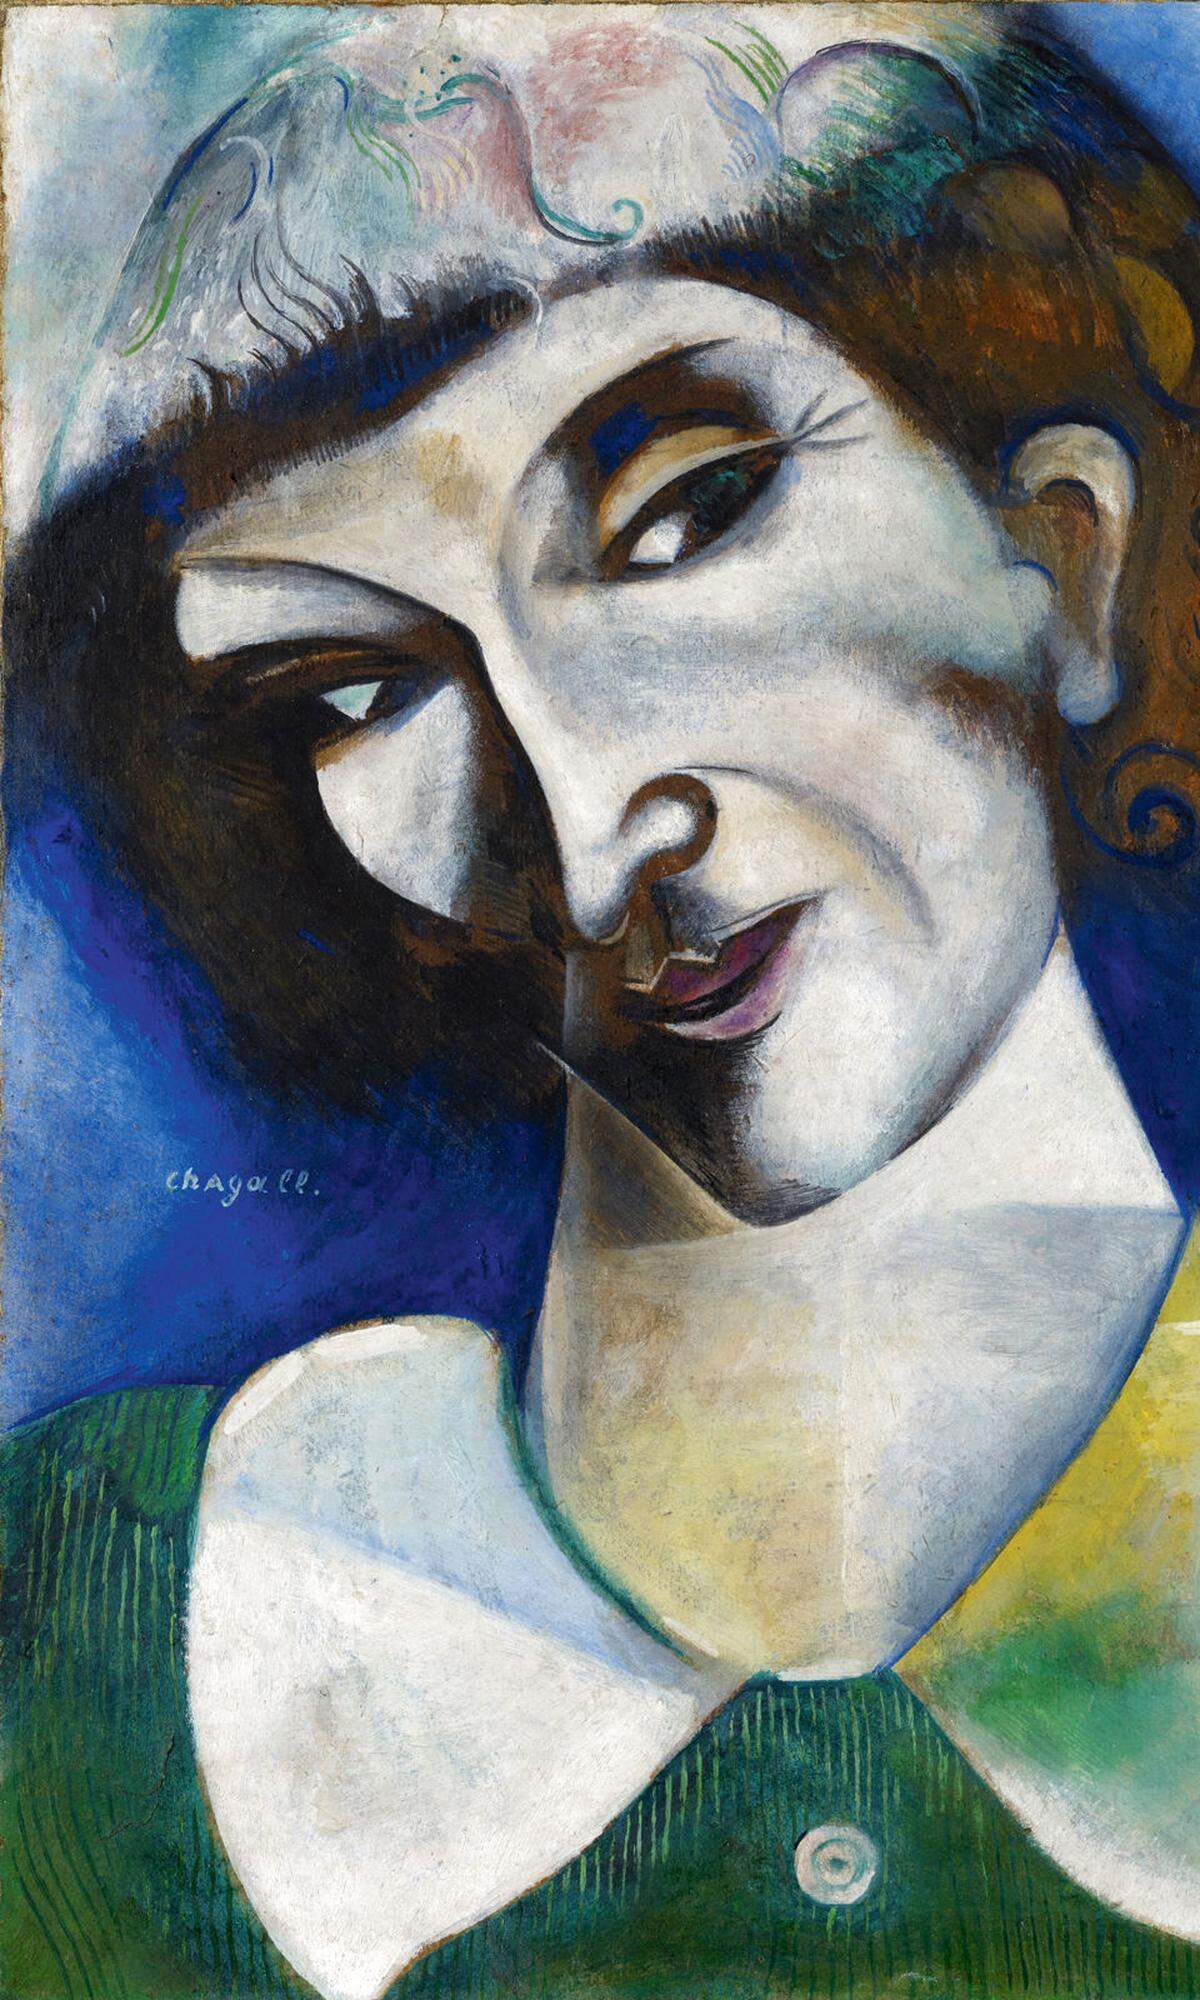 Selbstfindung. Nach produktiven und spannungsvollen Jahren in Paris zwang der Ausbruch des Ersten Weltkriegs Marc Chagall zum Verbleib in seiner Heimat Russland. Das Guggenheim Bilbao zeigt die Gemälde dieser Jahre als Ausdruck intensiver Selbstreflexion. 1. 6.–2. 9. www.guggenheim-bilbao.eus